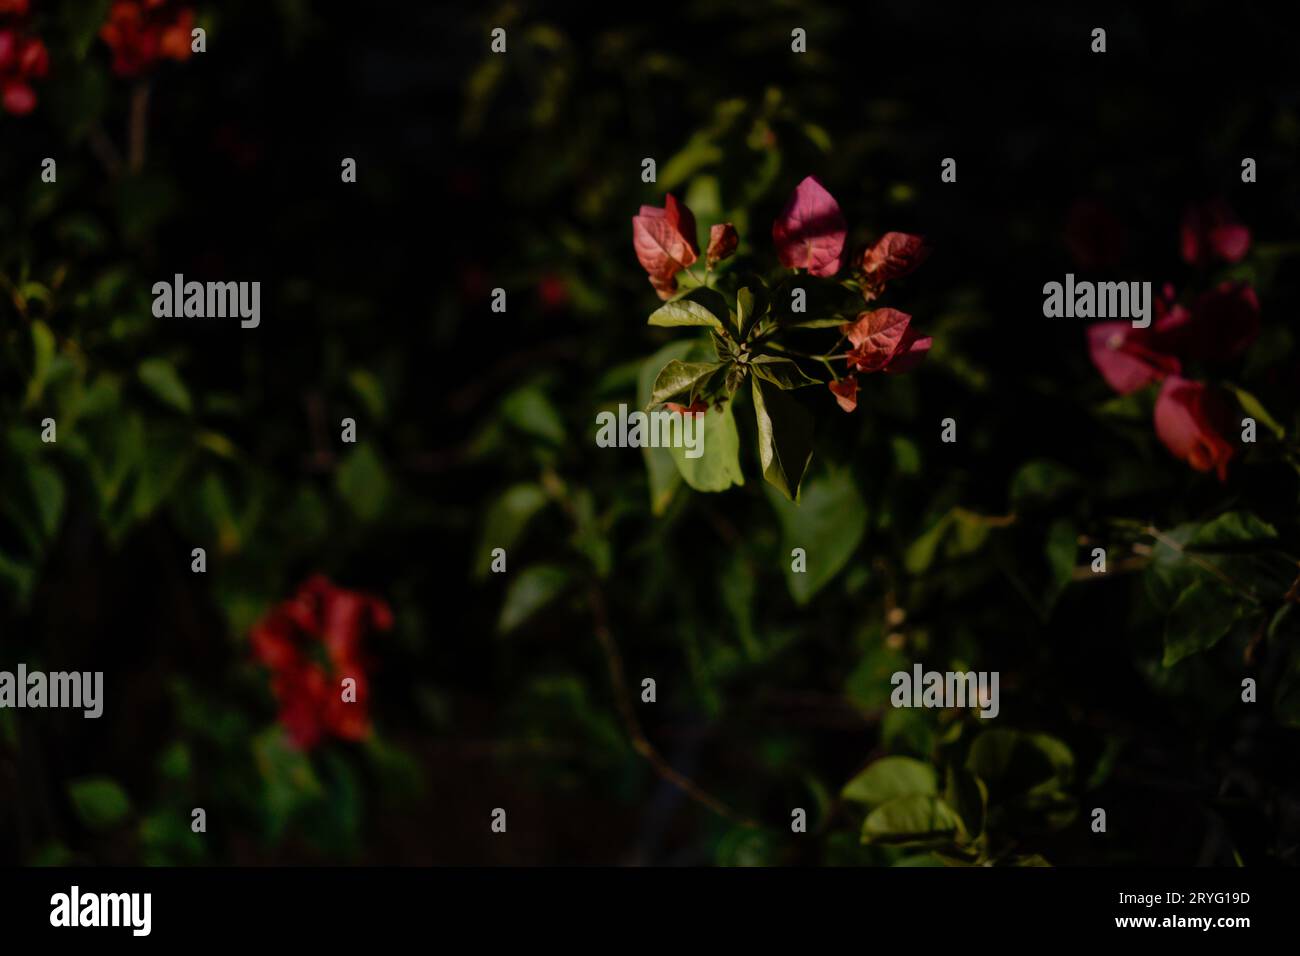 Fleurs de coton rouge la nuit avec lumière de lampe, visible de côté. Gros plan de la plante à fleurs rouges Banque D'Images